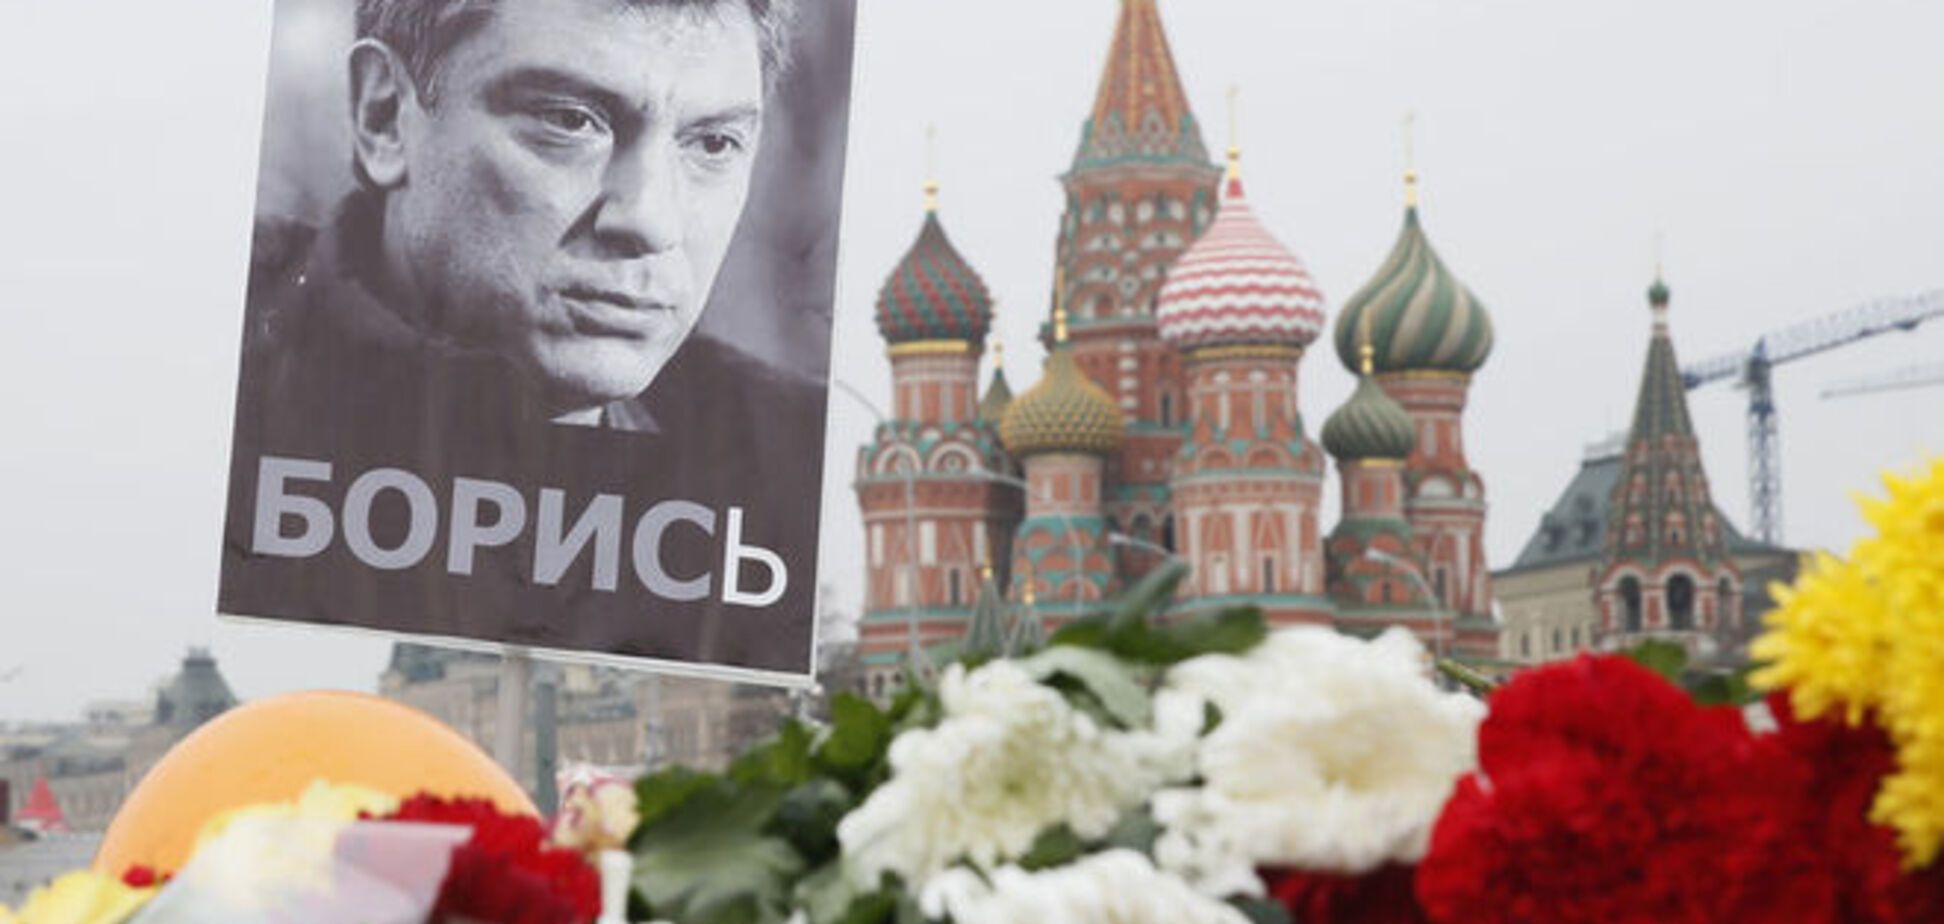 СМИ: в деле Немцова появился 'высокопоставленный представитель Чечни'